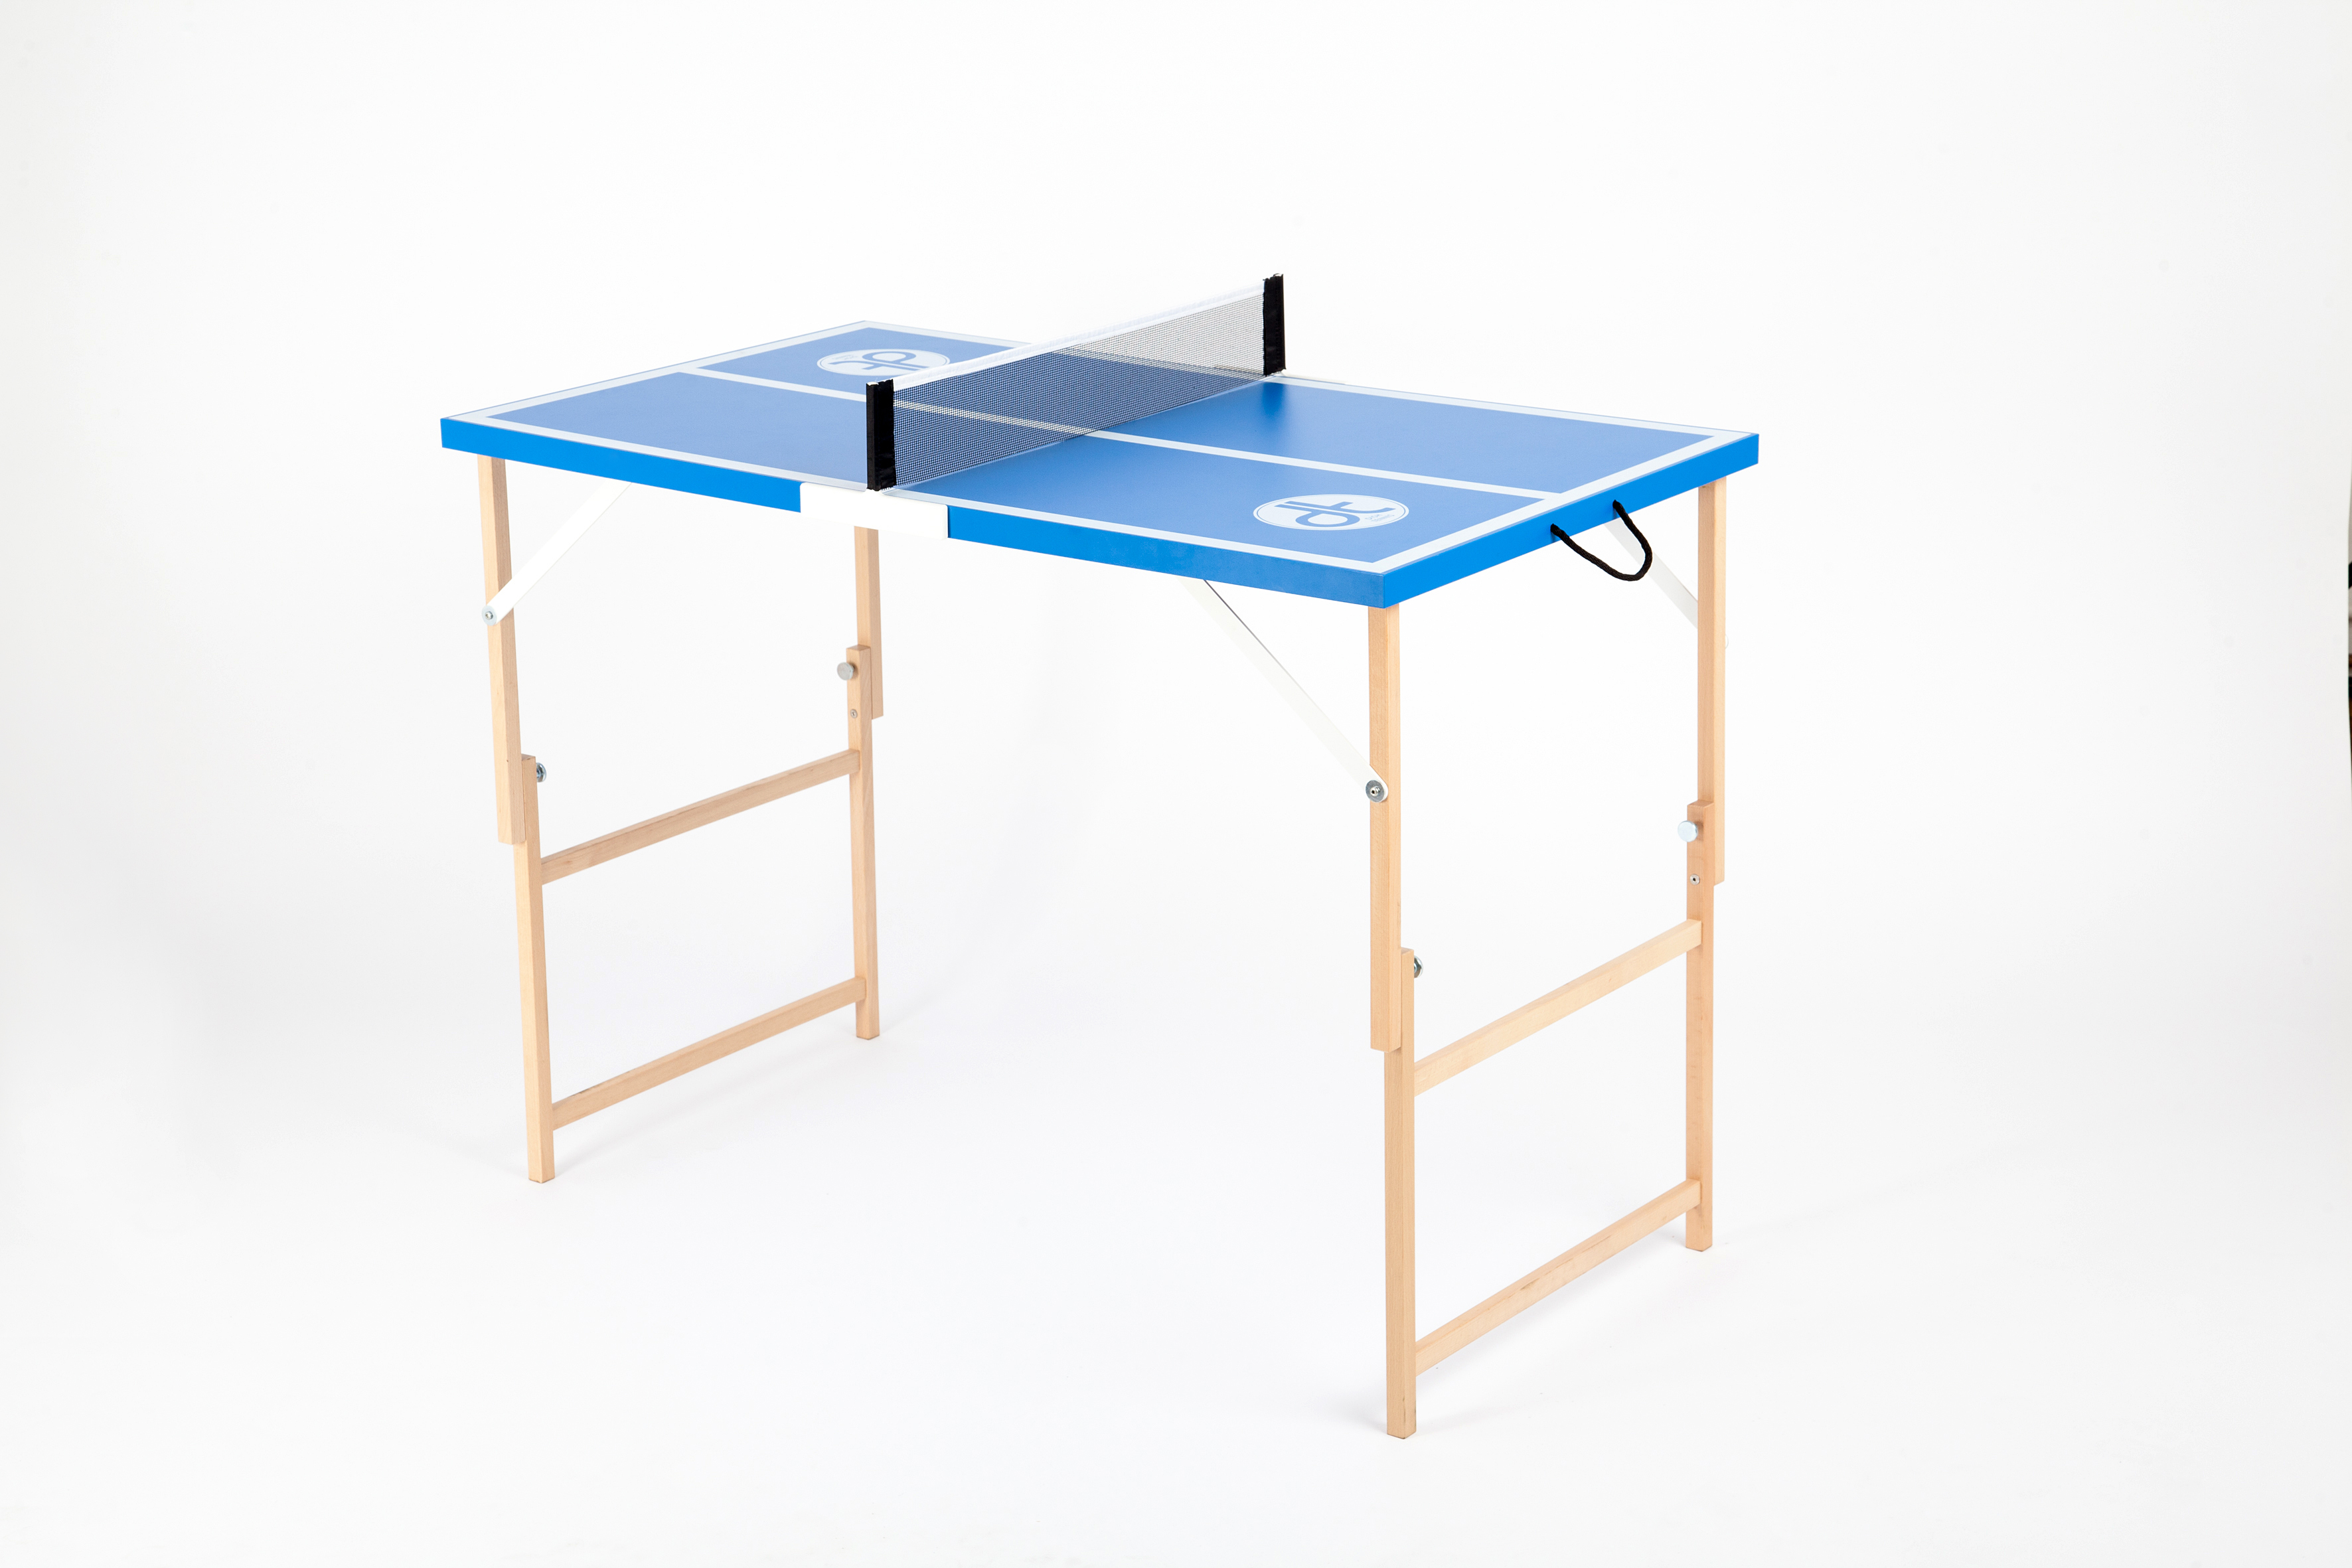 Mini table de ping pong 150x75cm - table pliable INDOOR bleue avec